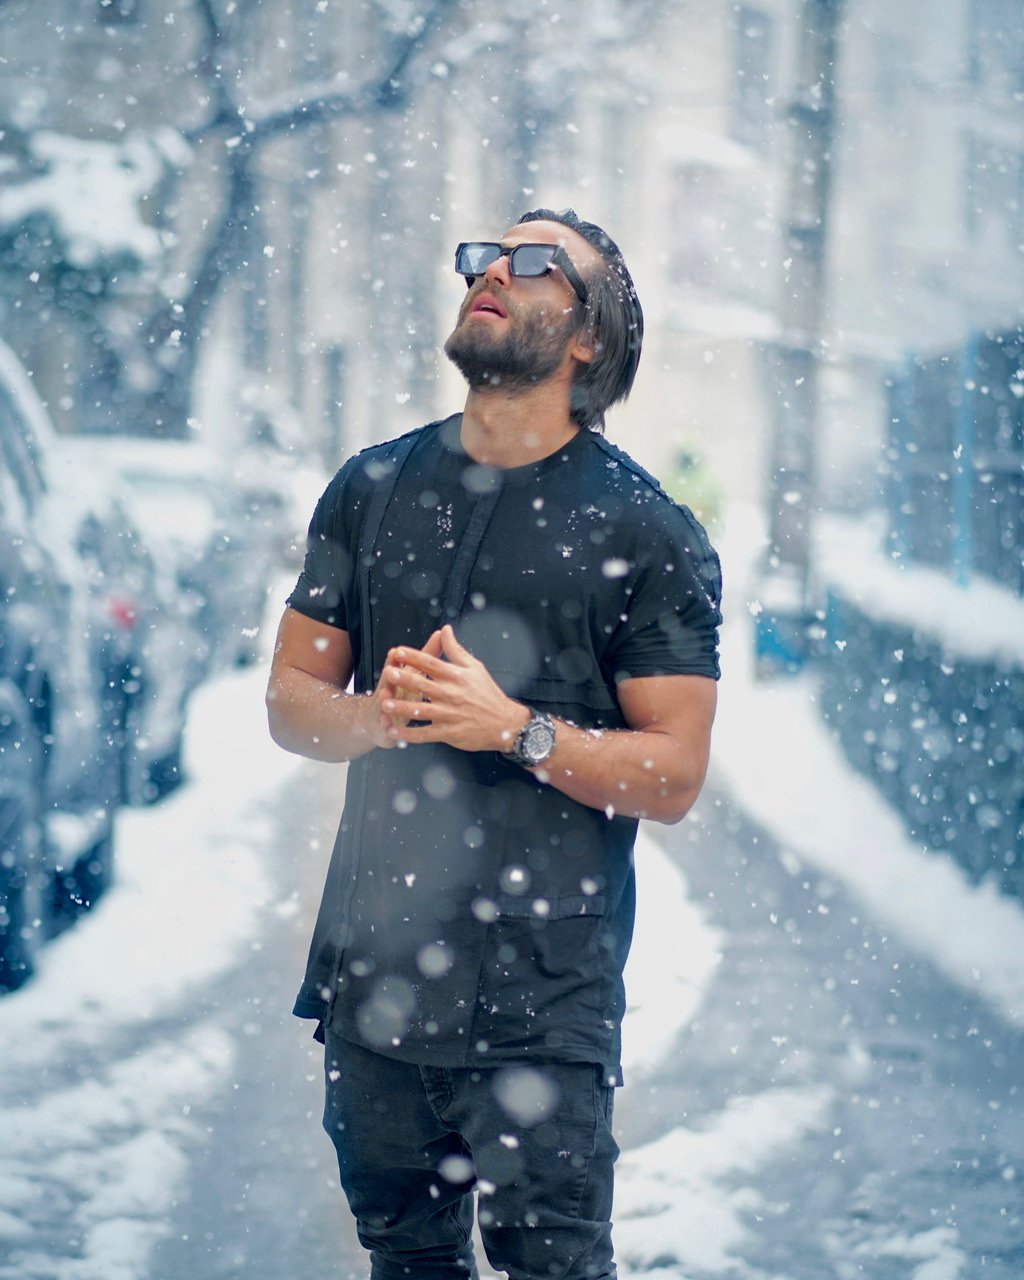 #portrait #male #snowing #photography #style #fashion, amir seilsepour